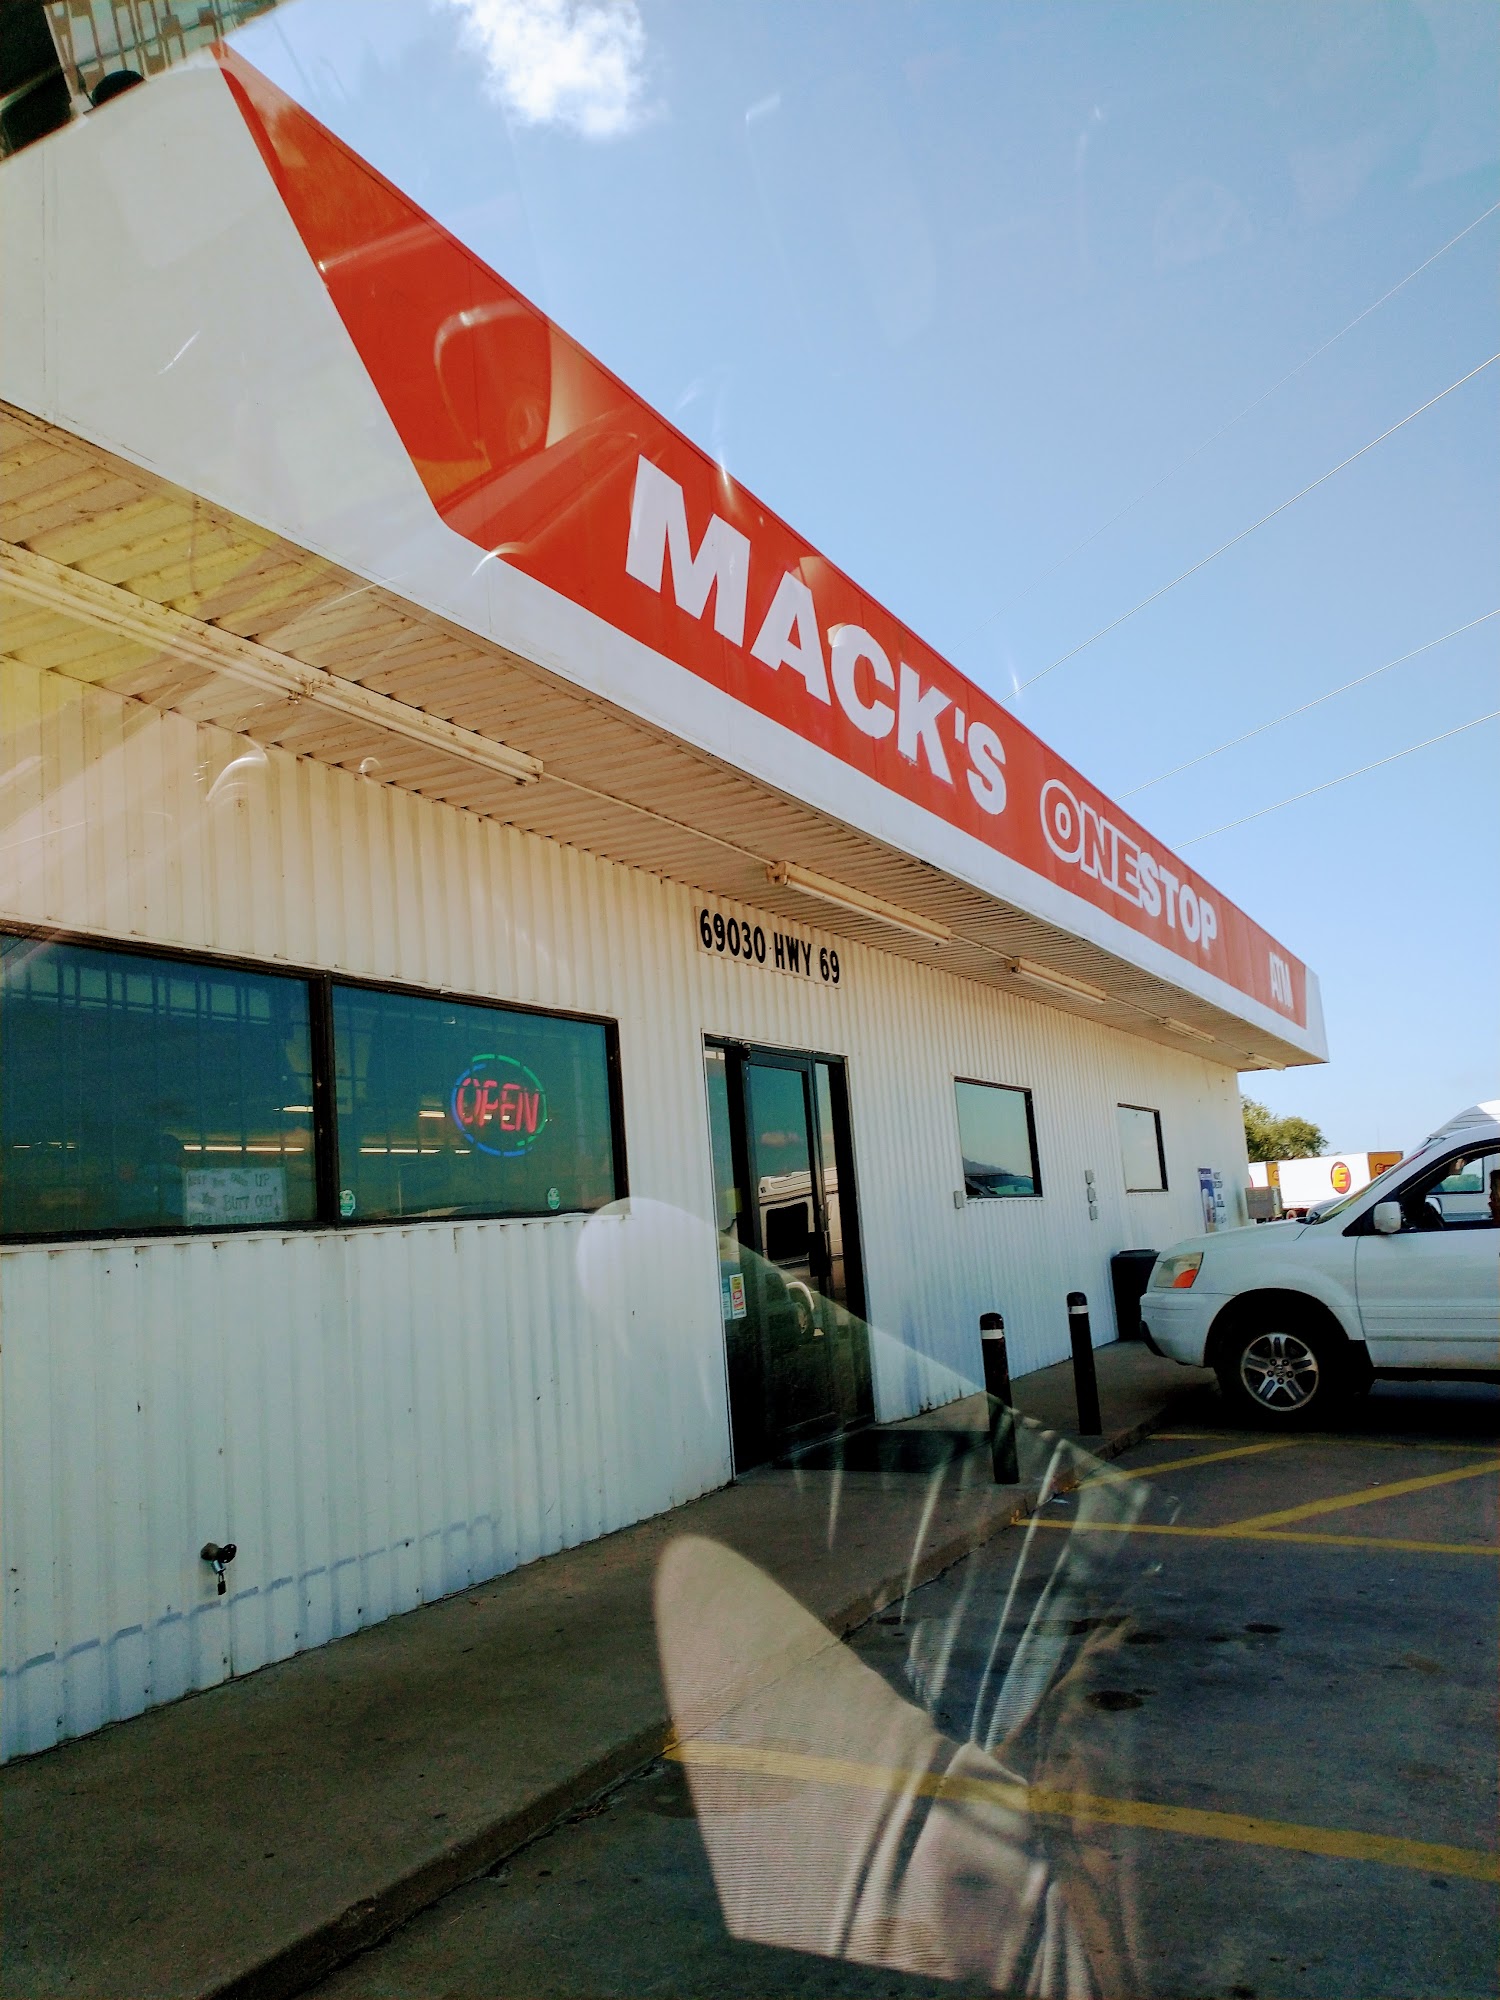 Mack's One Stop